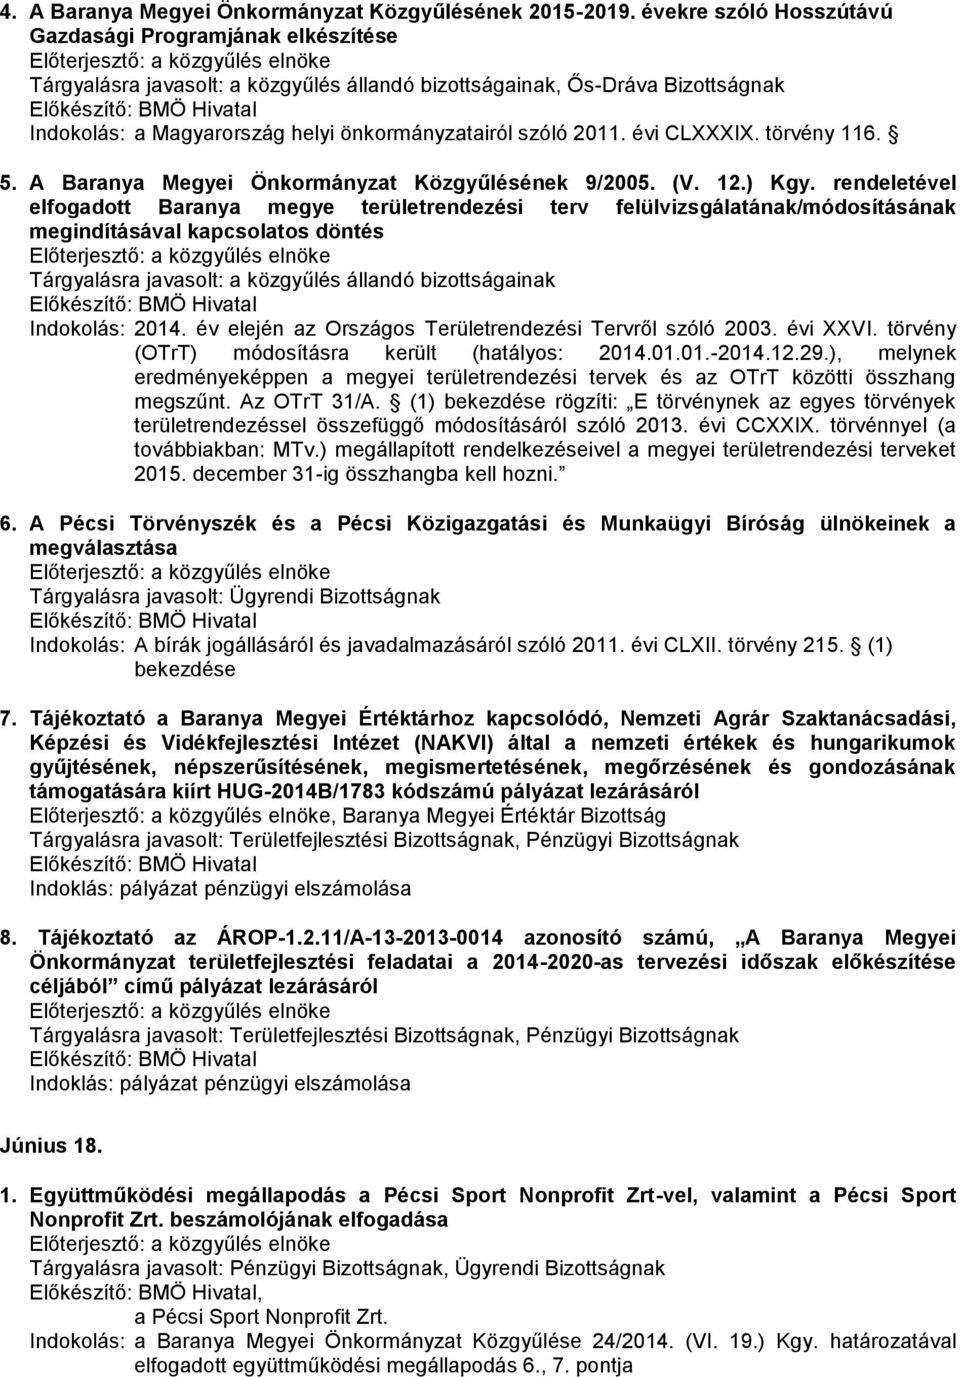 A Baranya Megyei Önkormányzat Közgyűlésének 9/2005. (V. 12.) Kgy.